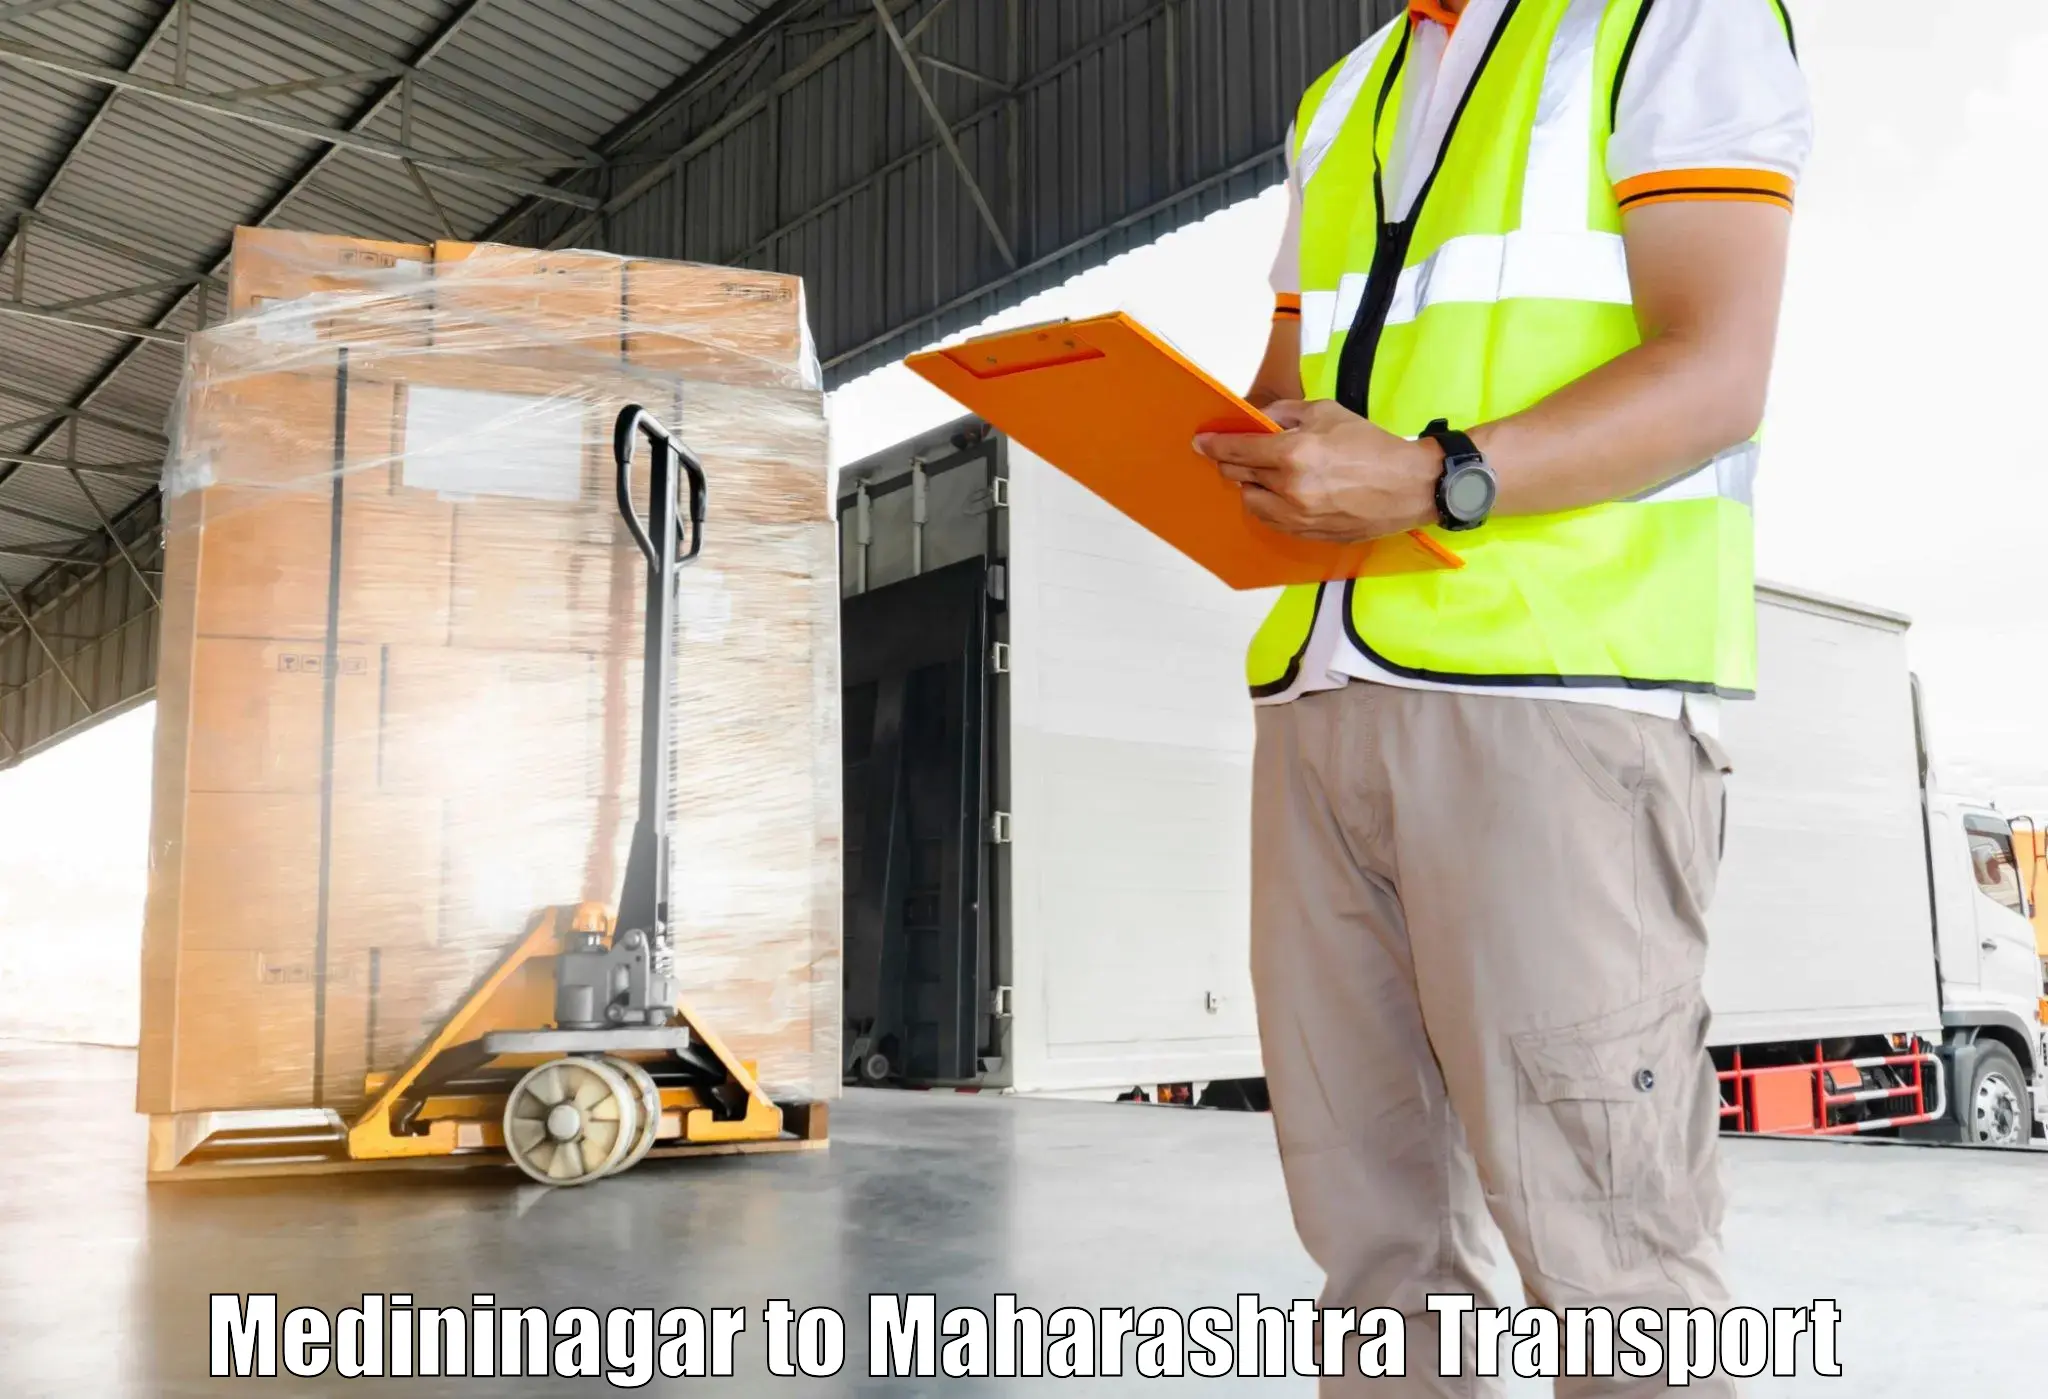 Container transportation services Medininagar to Savitribai Phule Pune University